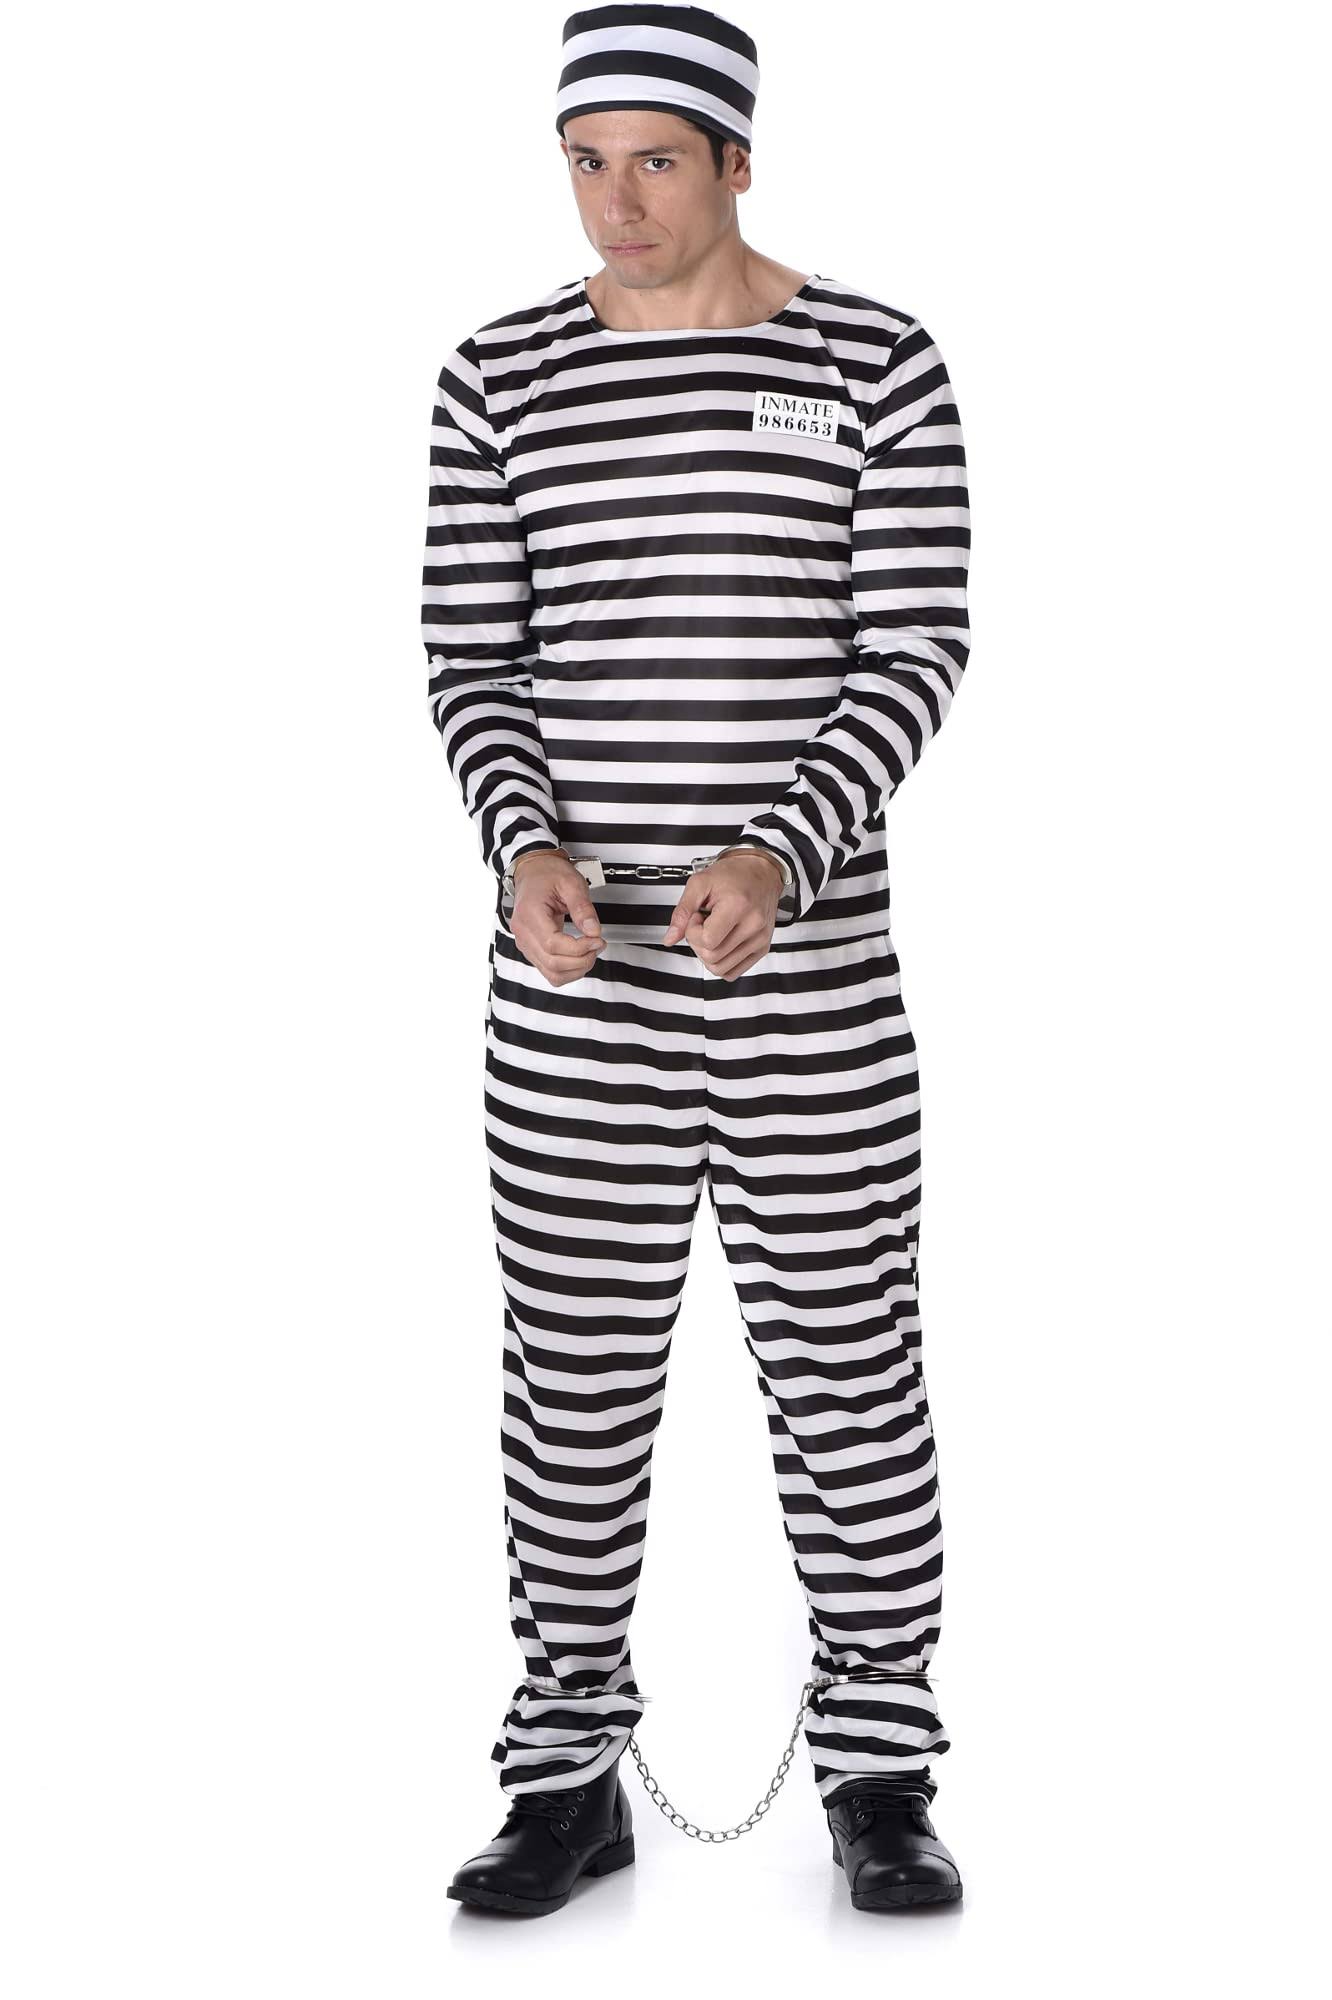 Black and White Prisoner Costume For Men